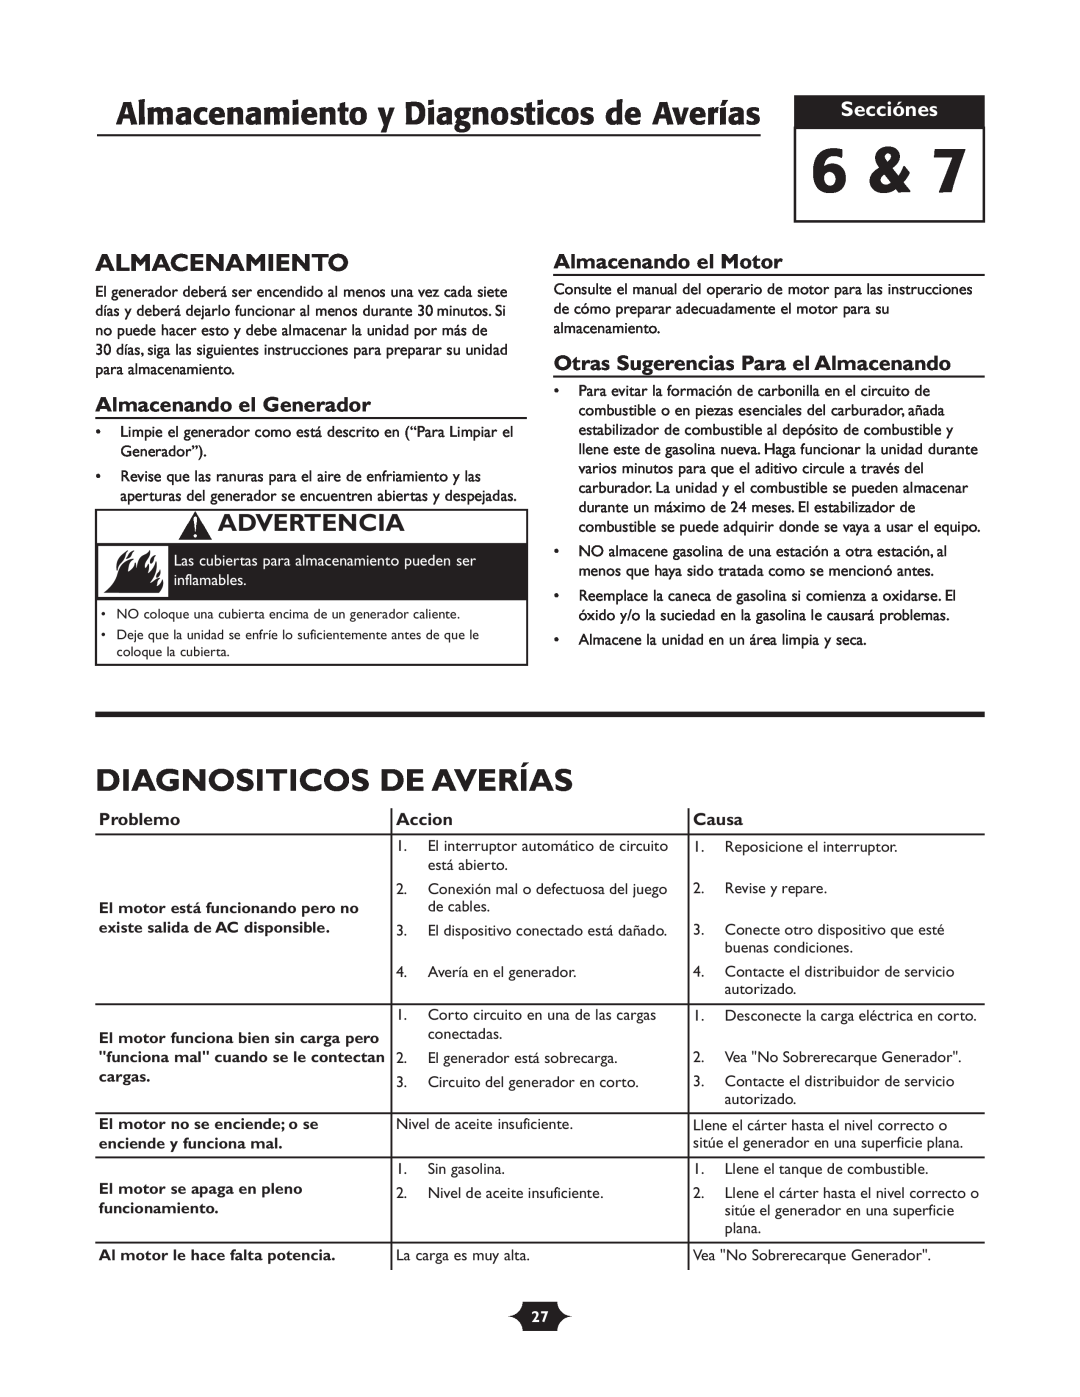 Troy-Bilt 030245 manual Diagnositicos De Averías, Almacenamiento, Secciónes, Almacenando el Generador, Almacenando el Motor 